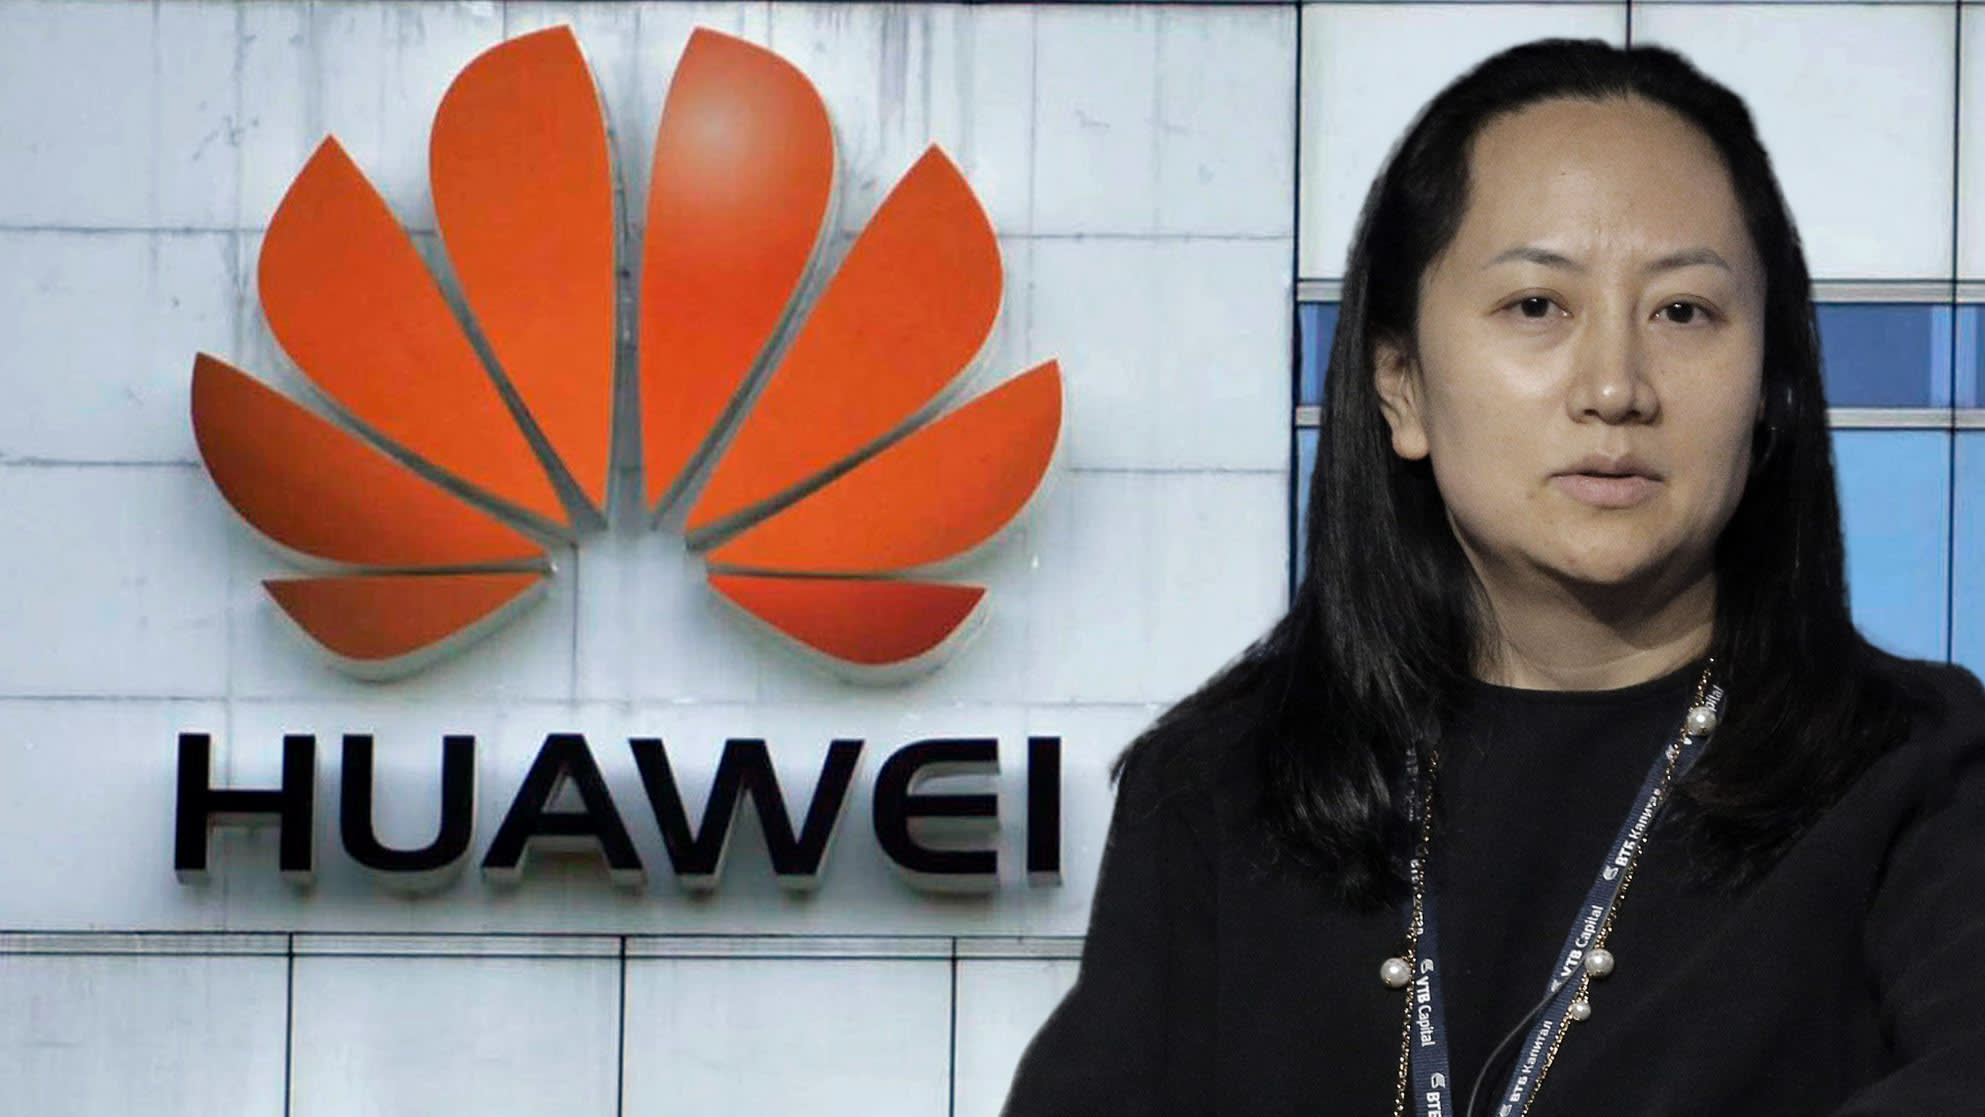 Directrice financière du géant chinois des télécommunications Huawei, Meng Wanzhou a été arrêtée le 1er décembre 2018 à l'aéroport de Vancouver pour avoir violé les sanctions américaines contre l'Iran. (Source : Nikkei Asian Review)